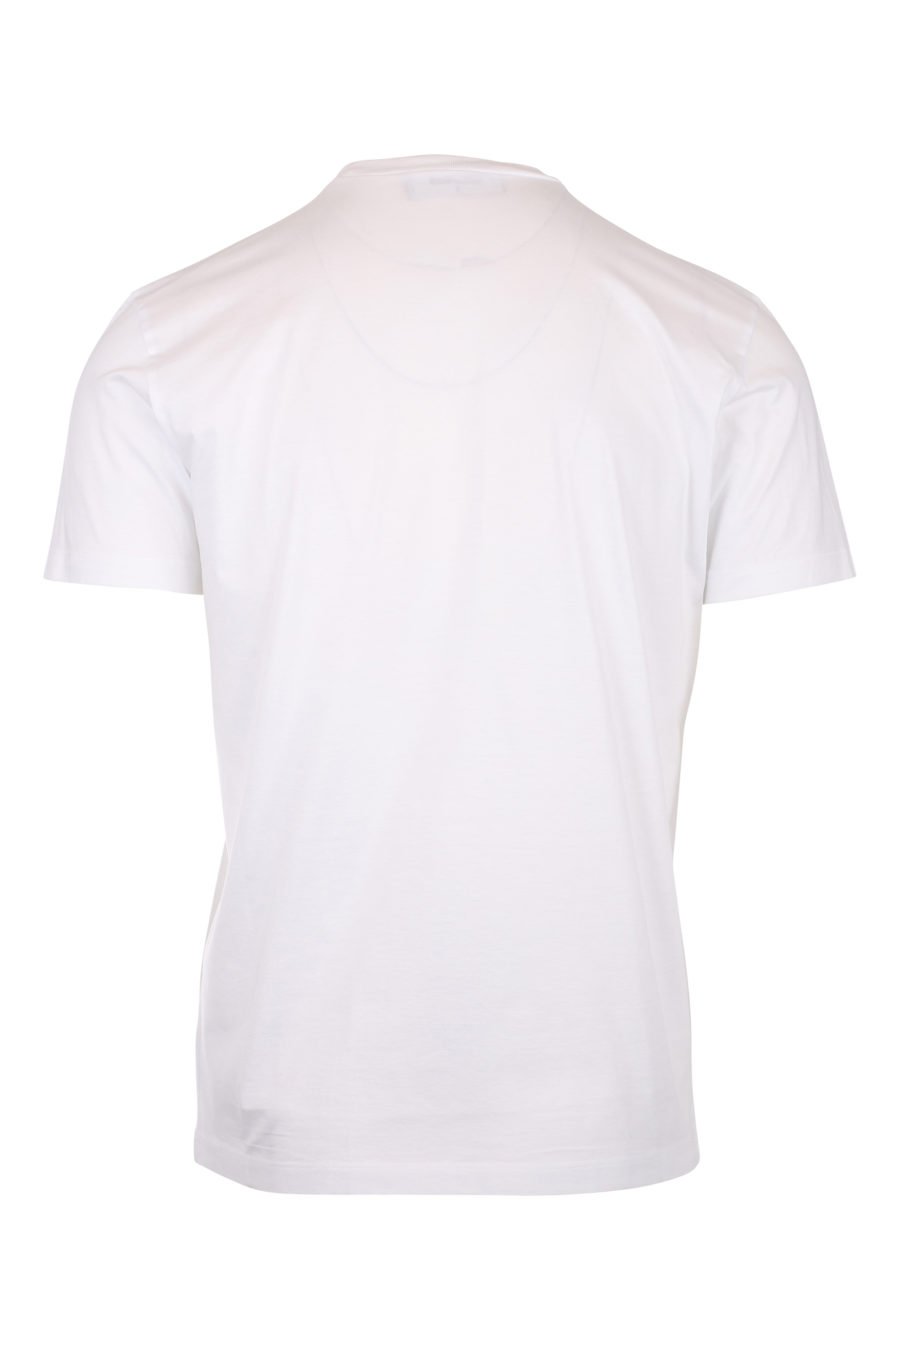 T-shirt weiß mit Logo ceresio 9 - IMG 9778